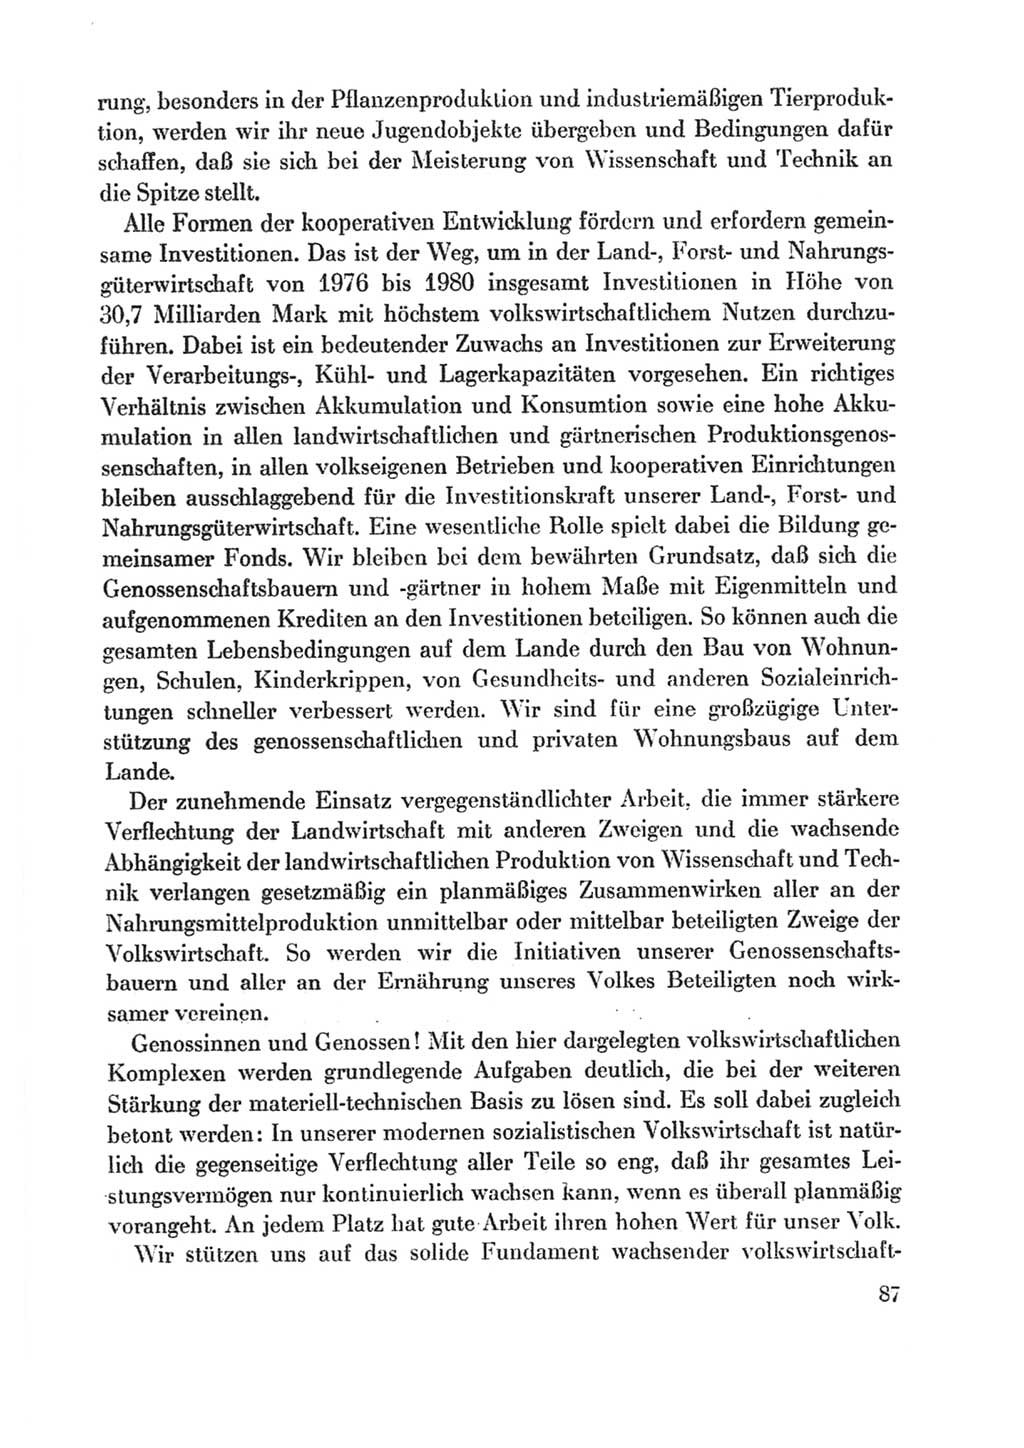 Protokoll der Verhandlungen des Ⅸ. Parteitages der Sozialistischen Einheitspartei Deutschlands (SED) [Deutsche Demokratische Republik (DDR)] 1976, Band 1, Seite 87 (Prot. Verh. Ⅸ. PT SED DDR 1976, Bd. 1, S. 87)